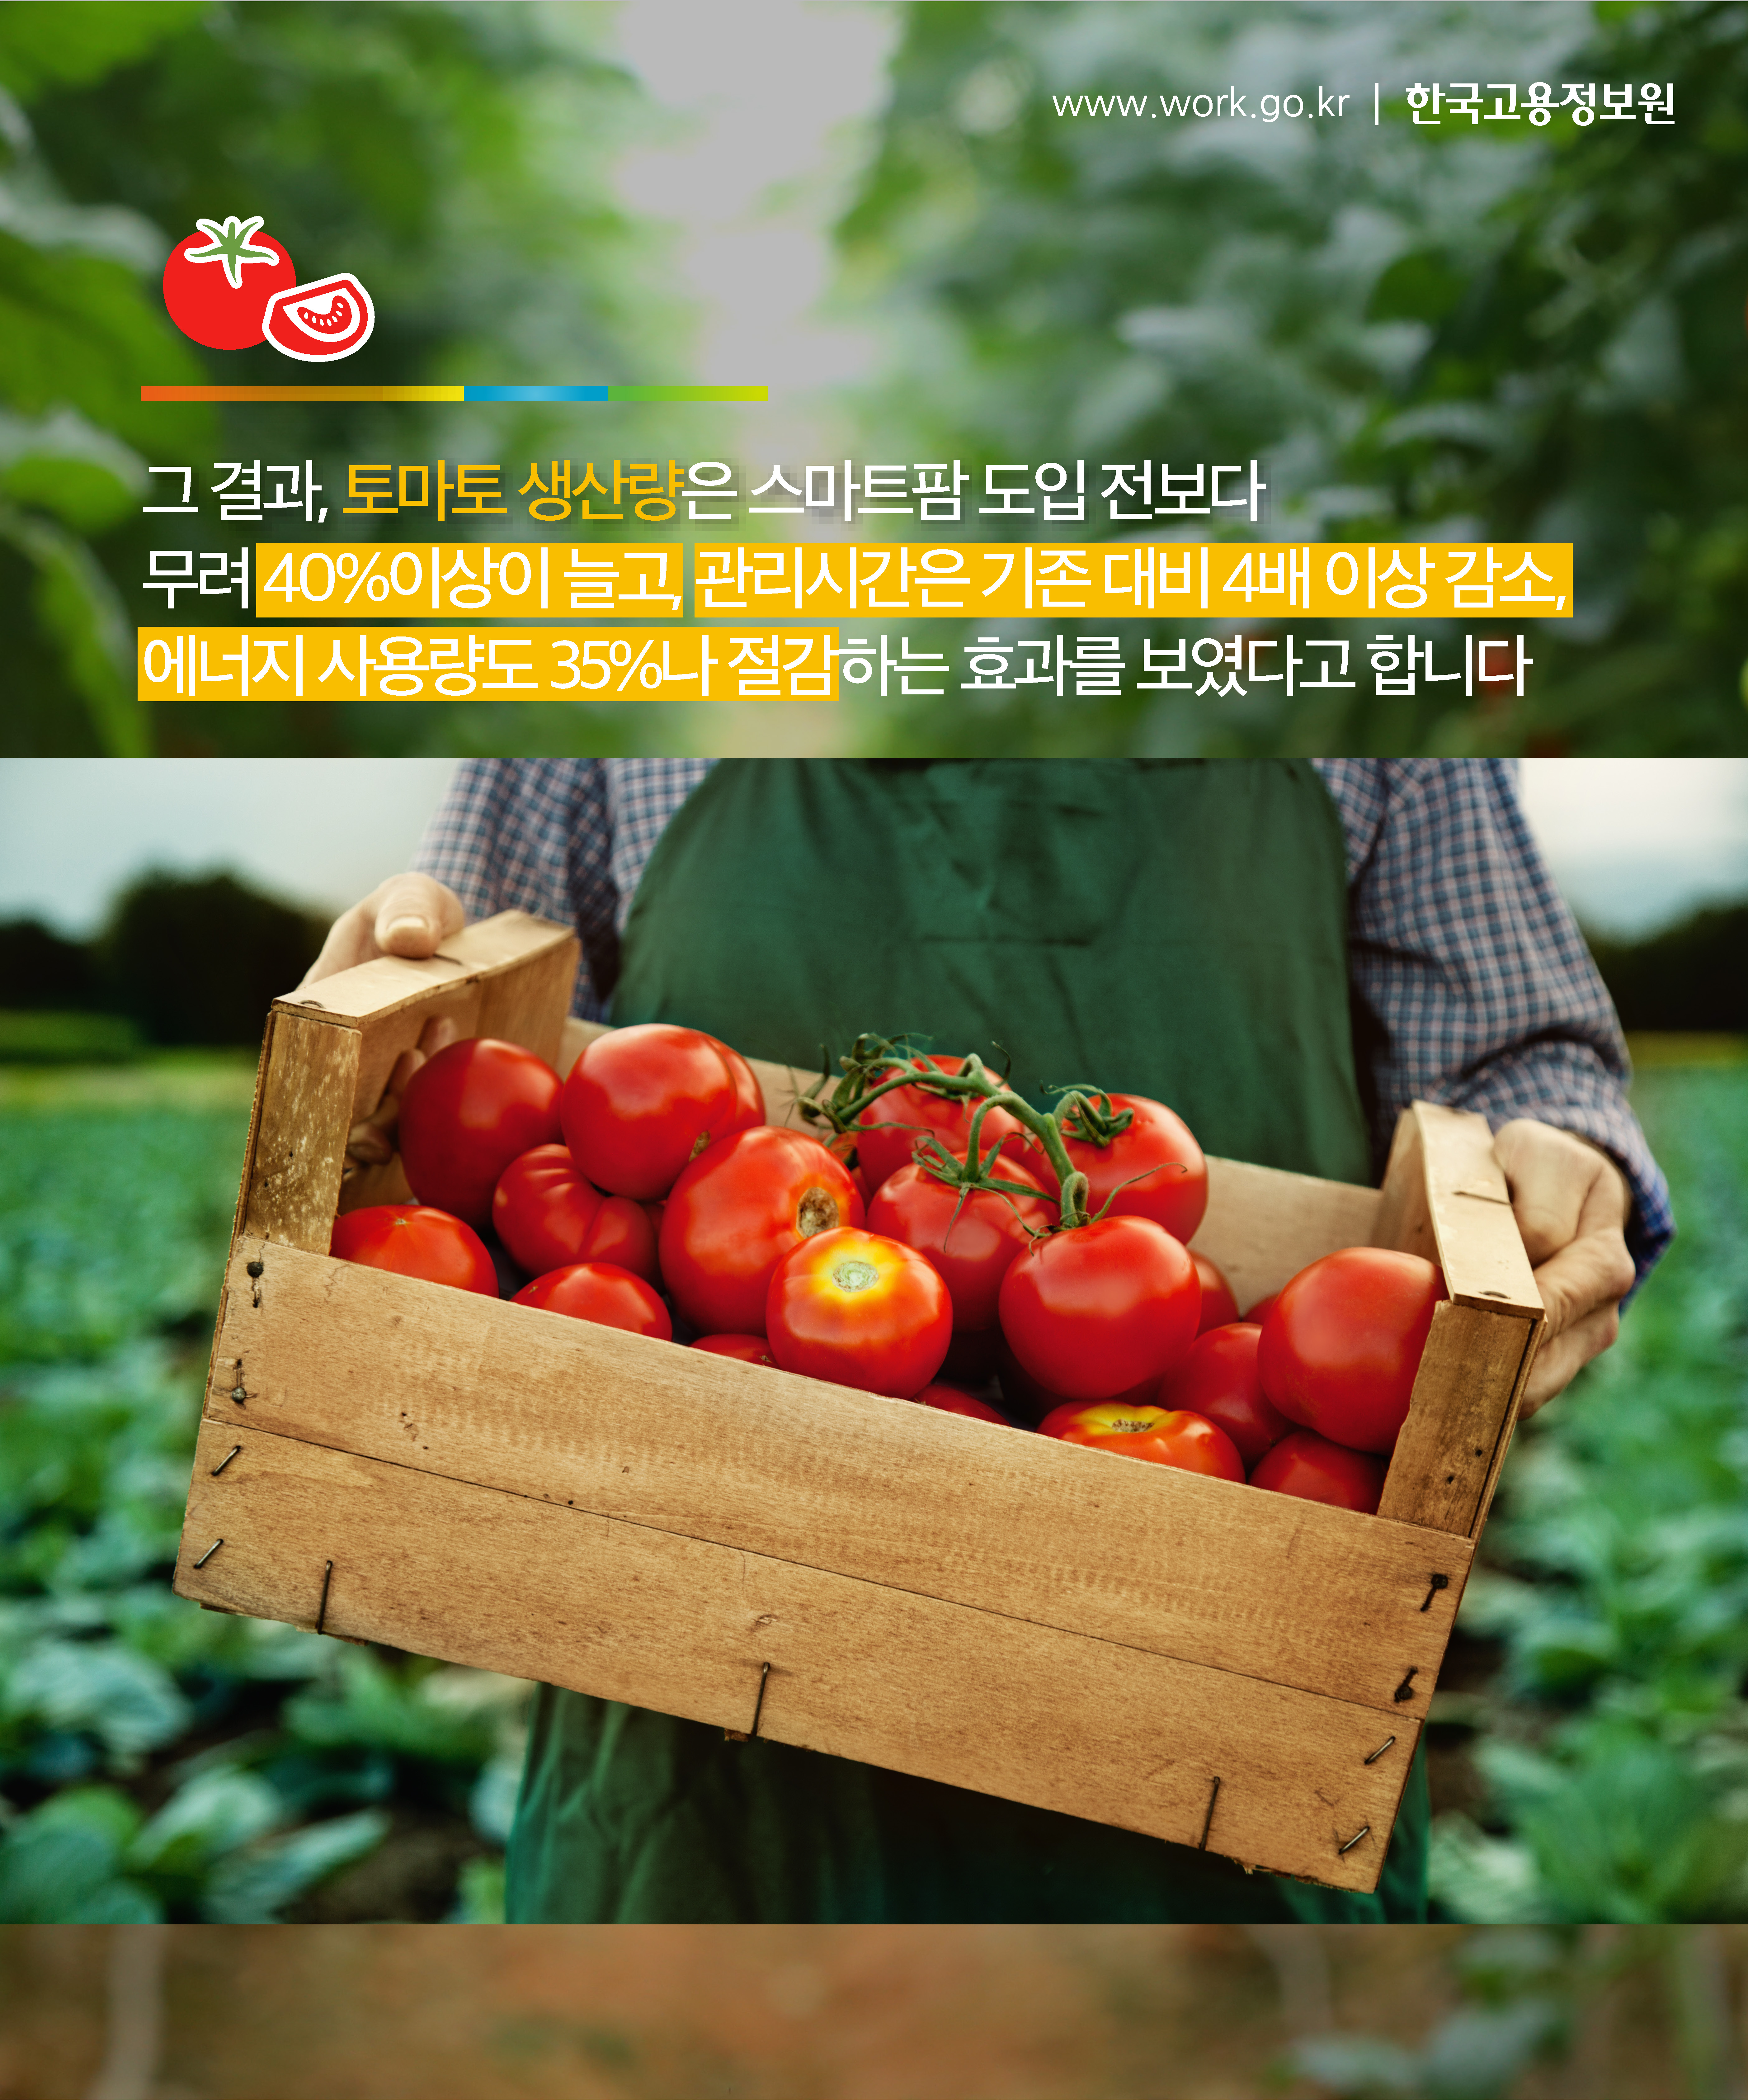 그 결과, 토마토 생산량은 스마트팜 도입 전보다 무려 40%이상이 늘고, 관리시간은 기존 대비 4배 이상 감소, 에너지 사용량도 35%나 절감하는 효과를 보였다고 합니다.